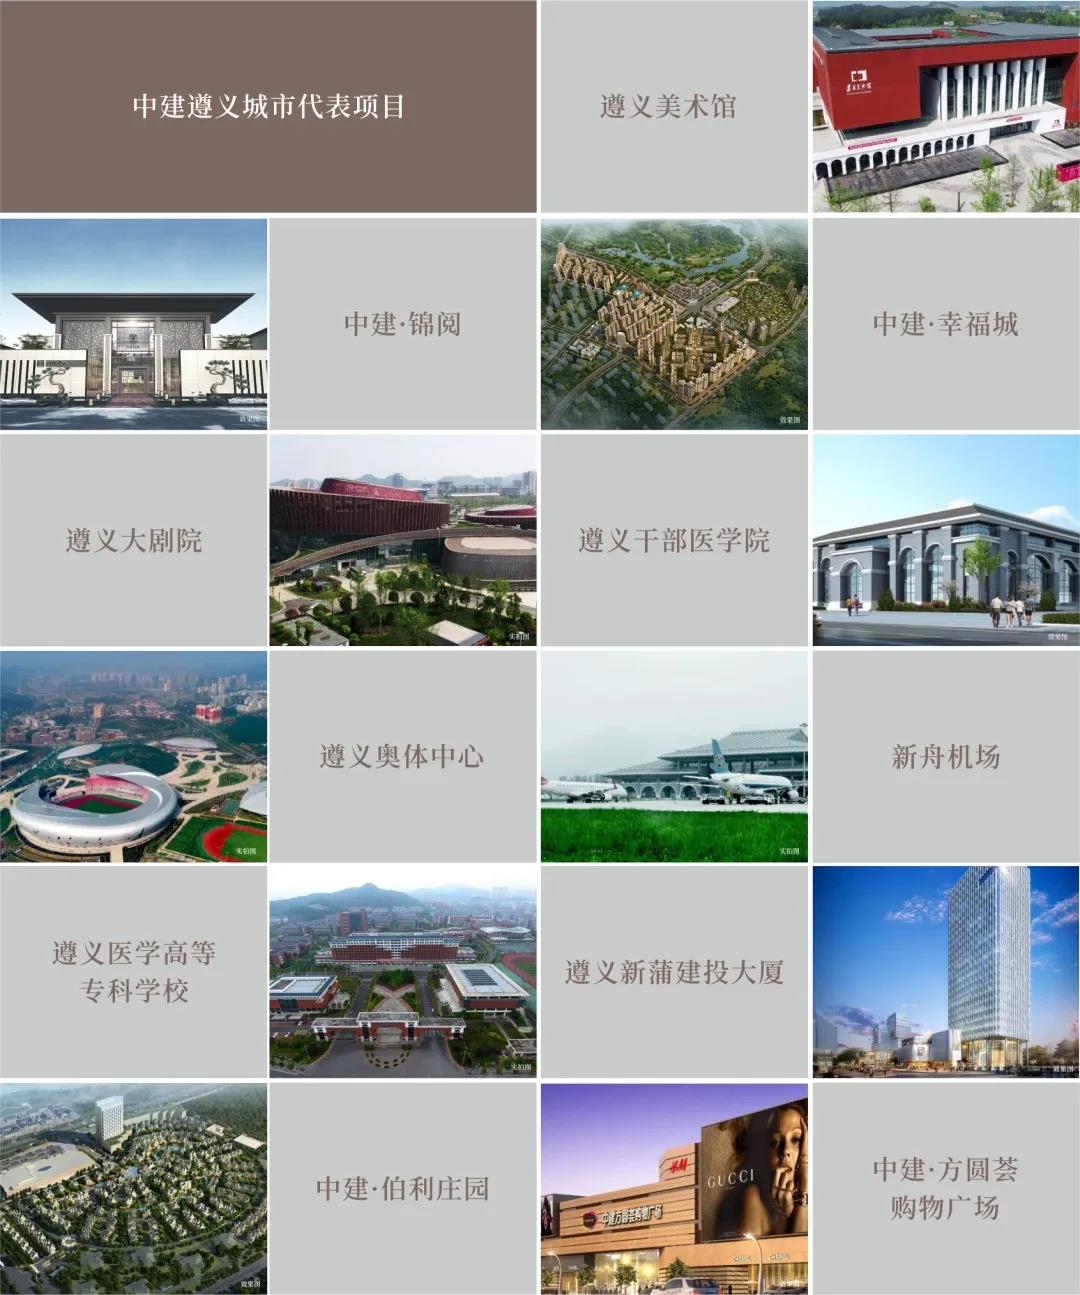 中建十年造城 top係作品定義塔尖人居標準-中國網地産